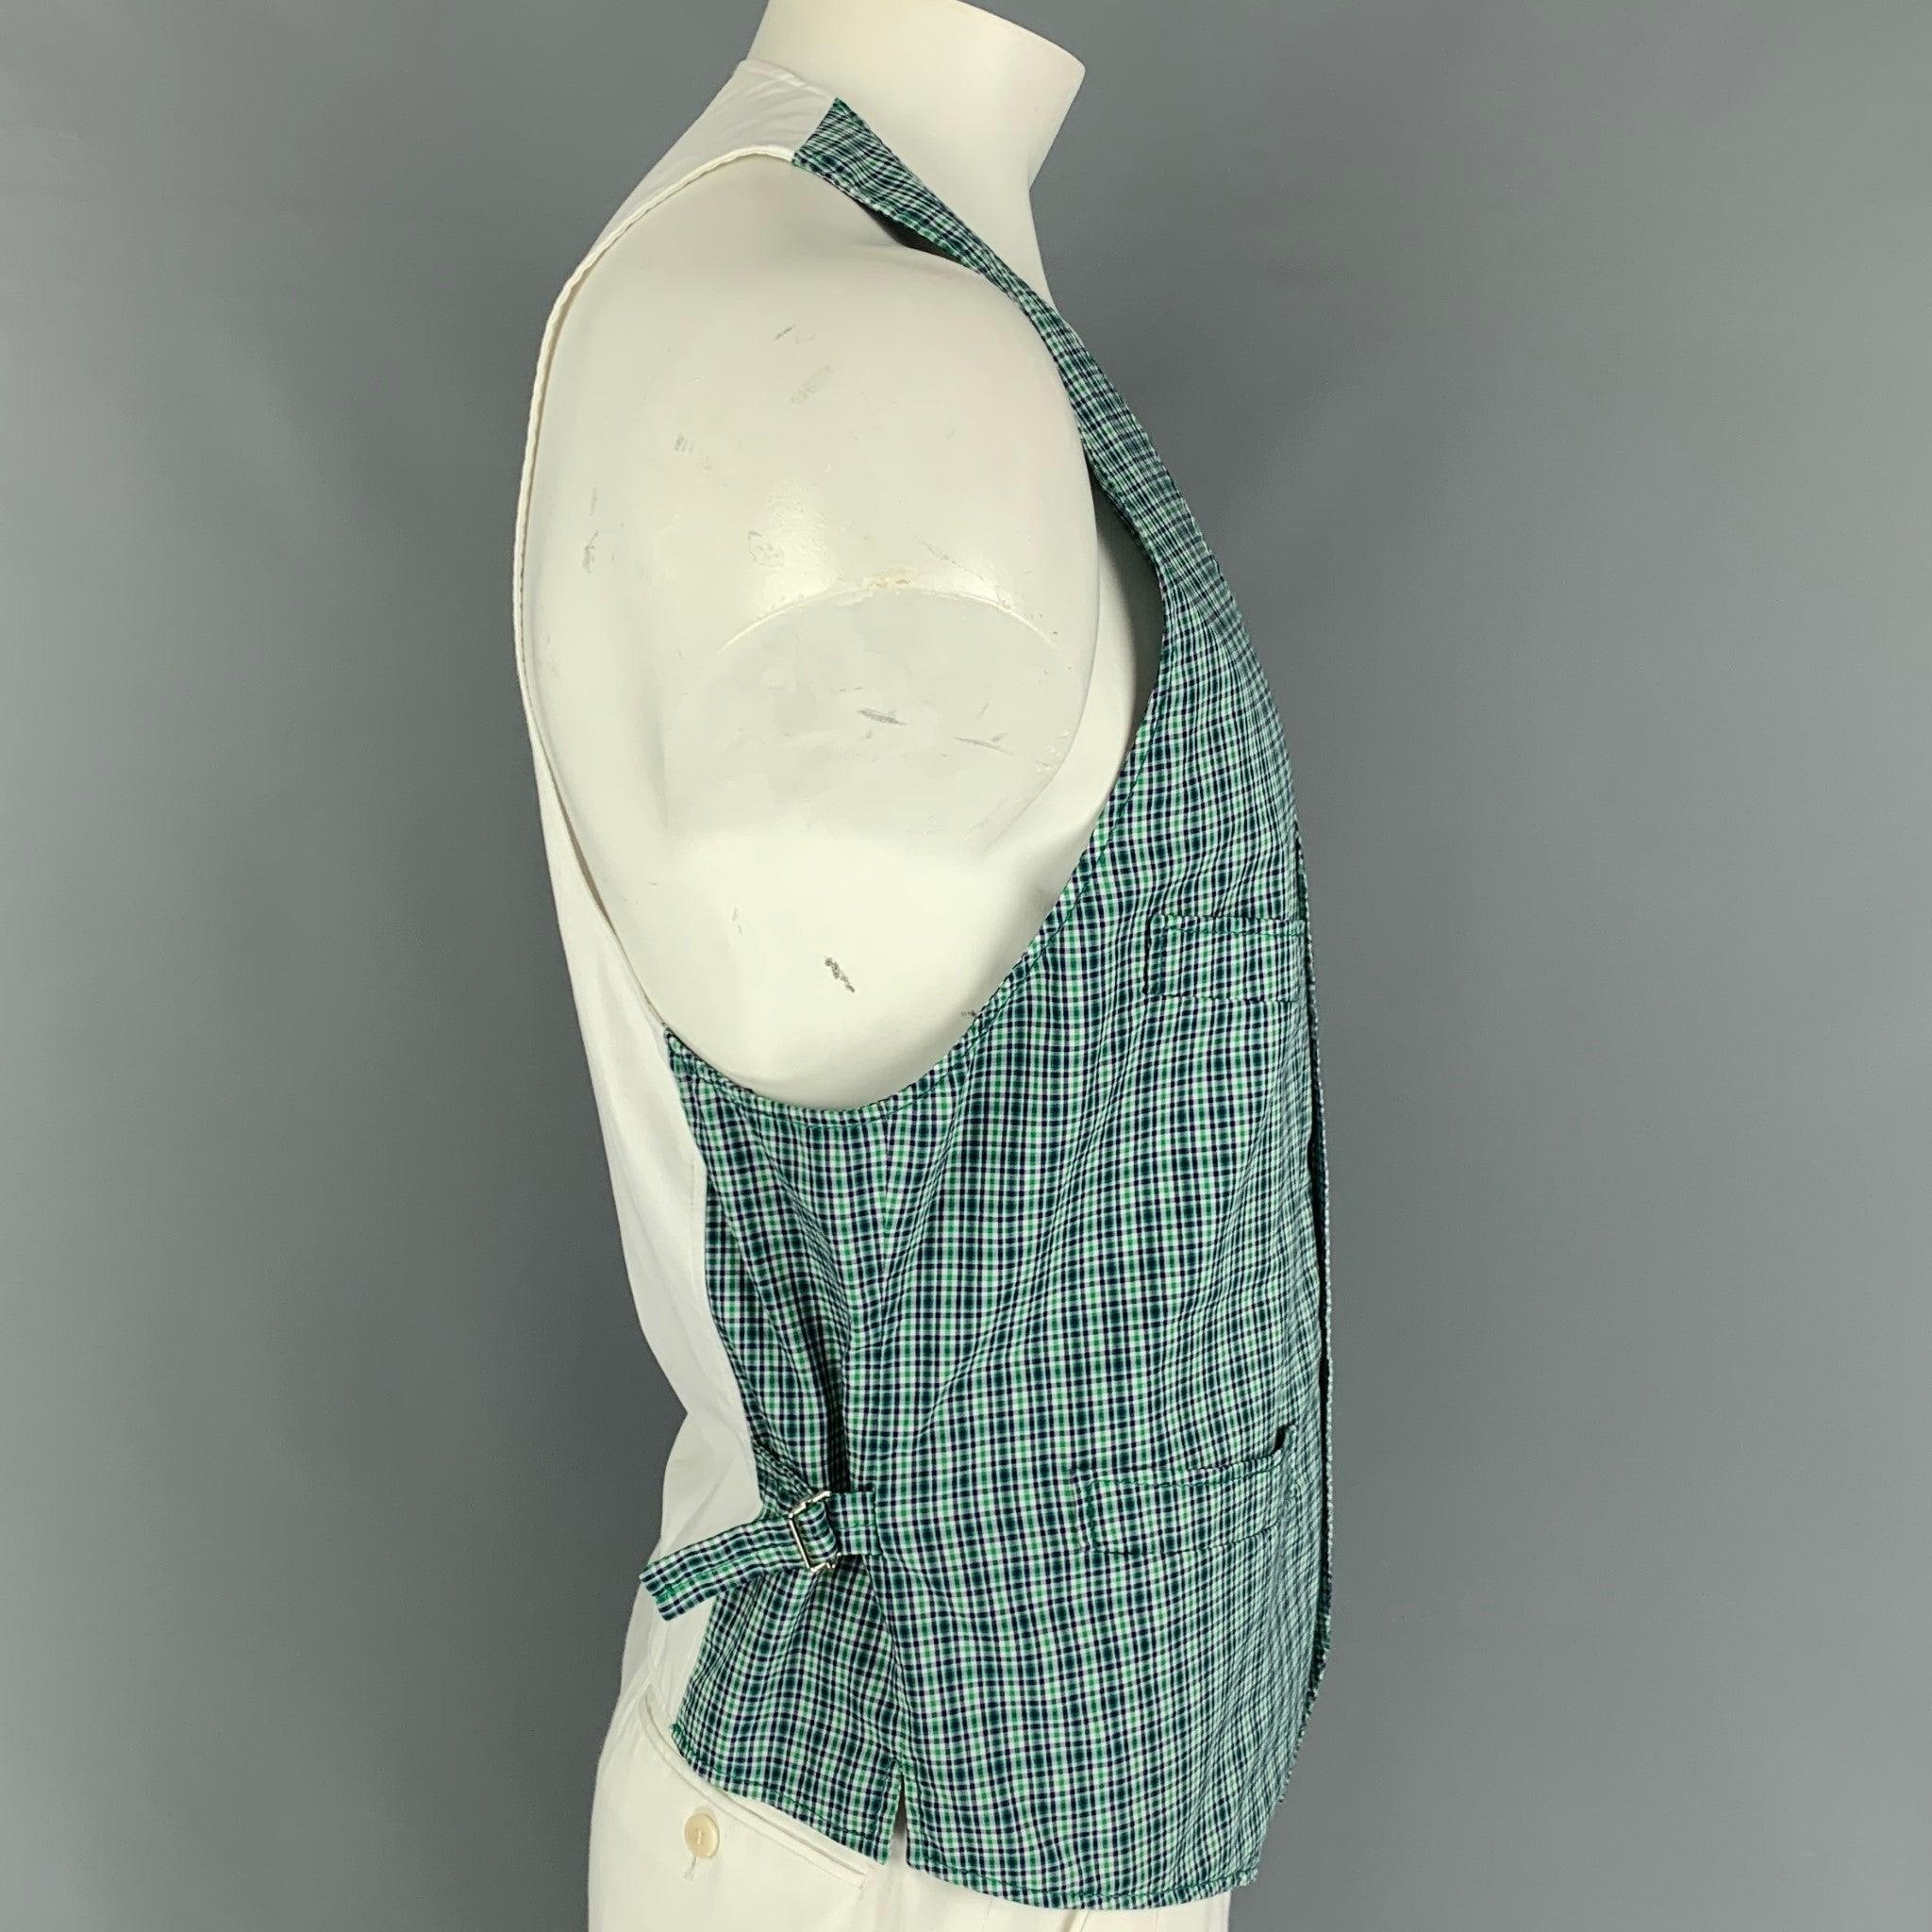 DSQUARED2 Weste aus grün und marineblau karierter Baumwolle mit Fronttaschen, seitlichen Laschen und einem Knopfverschluss. Hergestellt in Italien.
Sehr gut
Gebrauchtes Zustand.  

Markiert:   54 

Abmessungen: 
 
Schultern: 11 Zoll  Brustkorb: 42